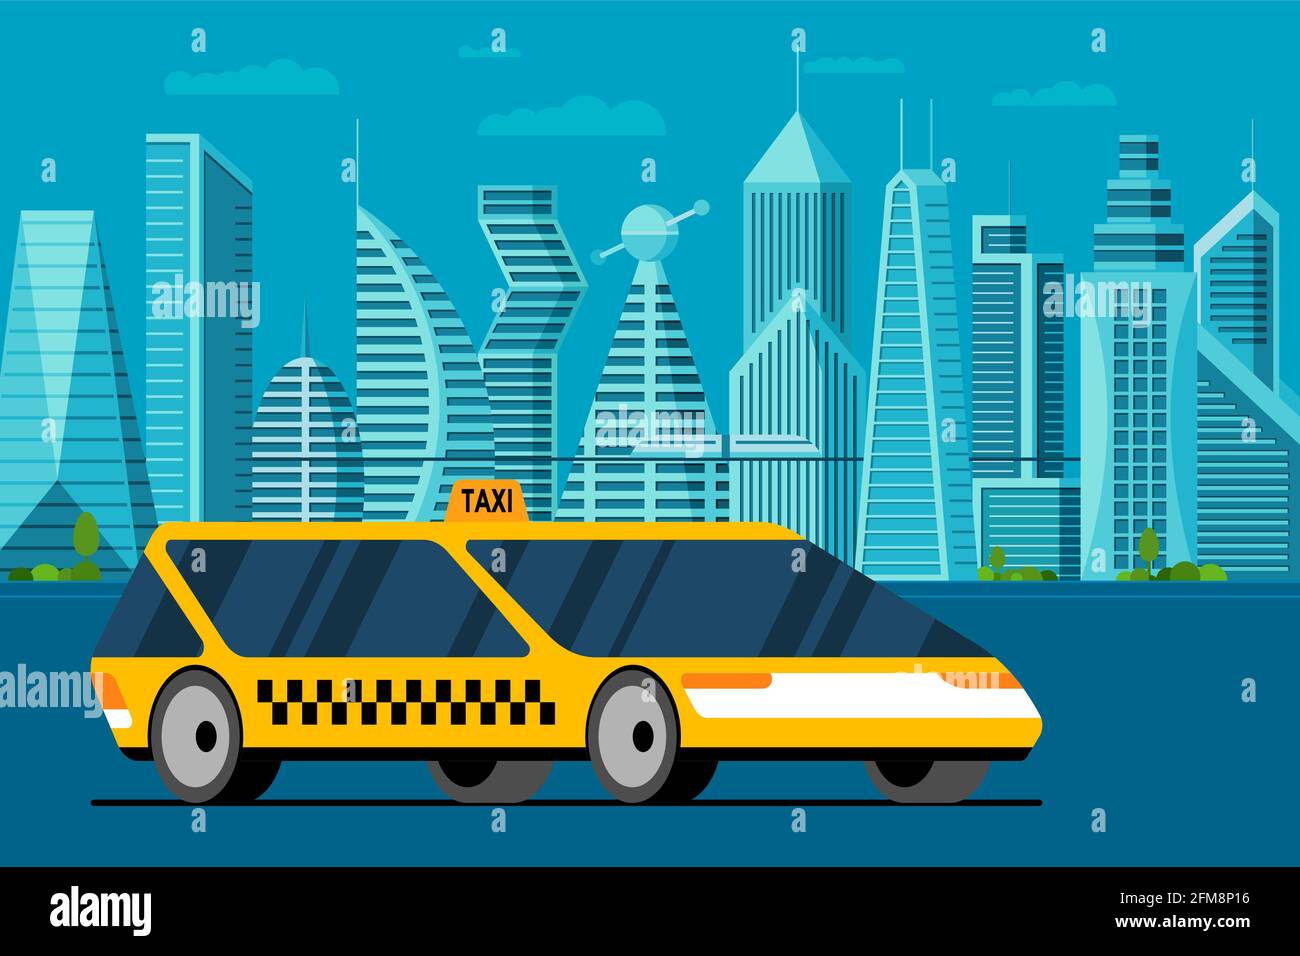 Futuristica auto gialla sulla futura strada del paesaggio urbano. Servizio autonomo di taxi taxi in città intelligente con grattacieli e torri. Illustrazione vettoriale piatta Illustrazione Vettoriale